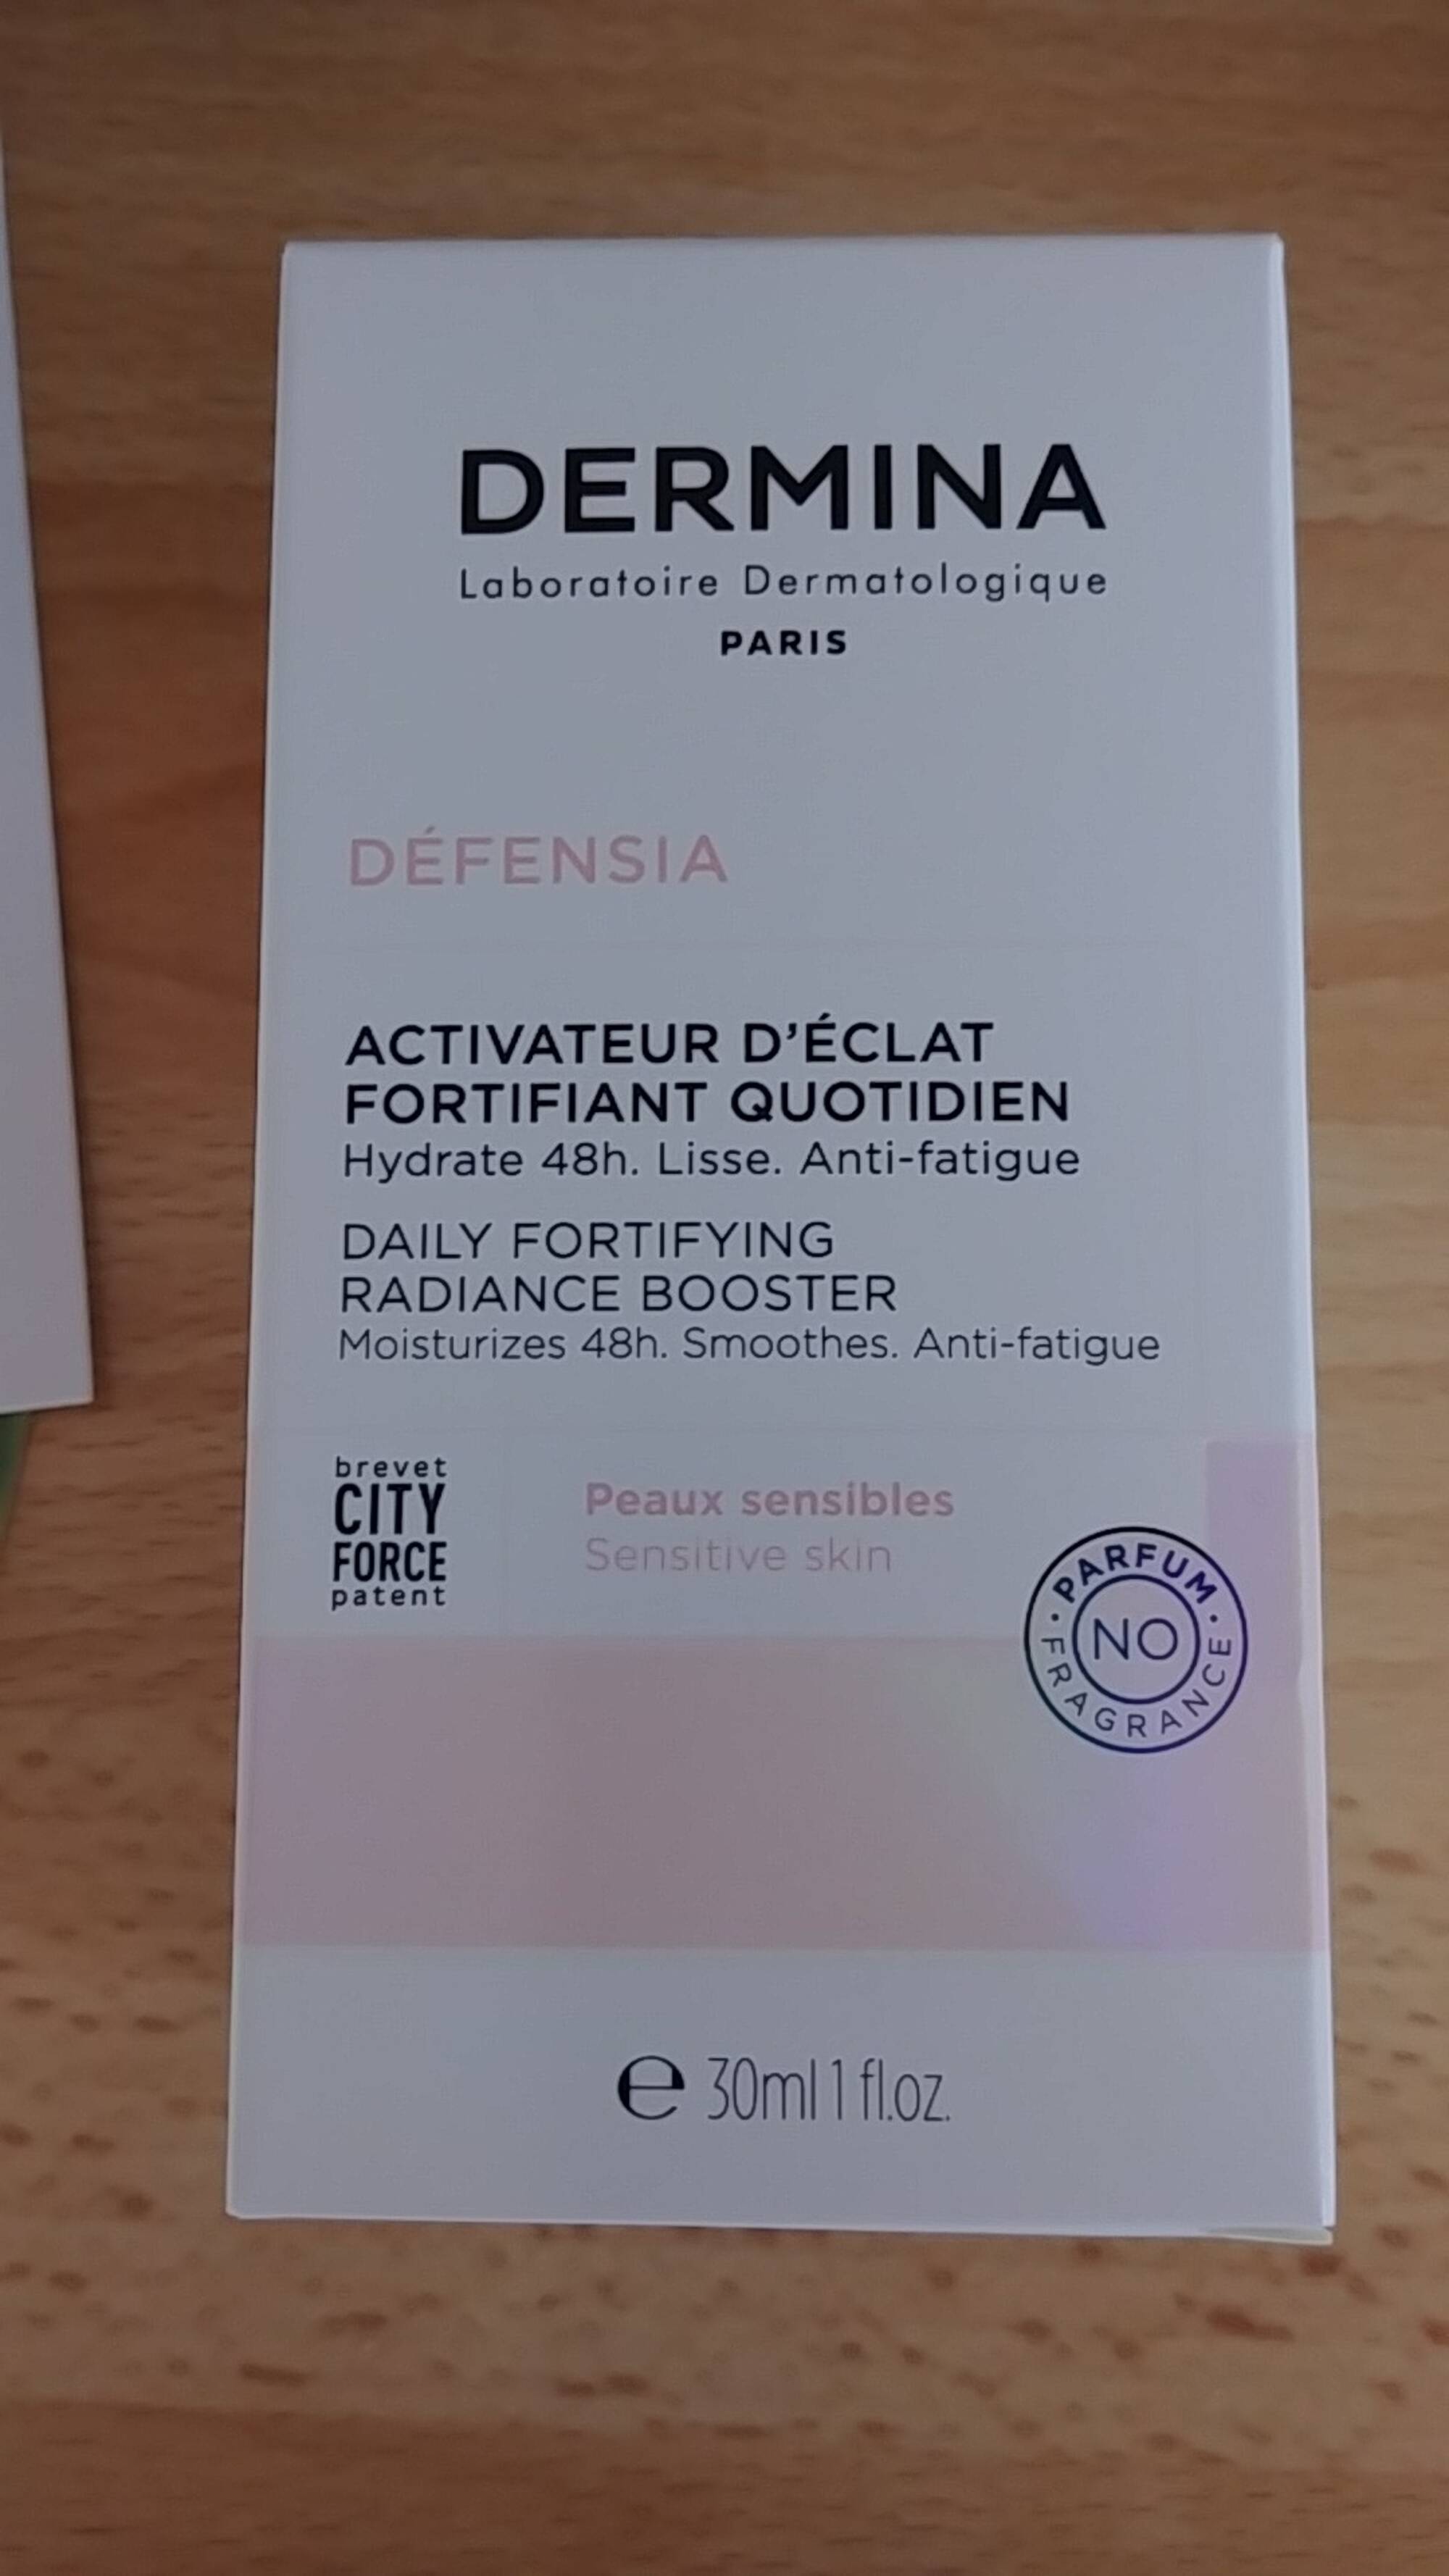 DERMINA - Défensia - Activateur d'éclat fortifiant quotidien